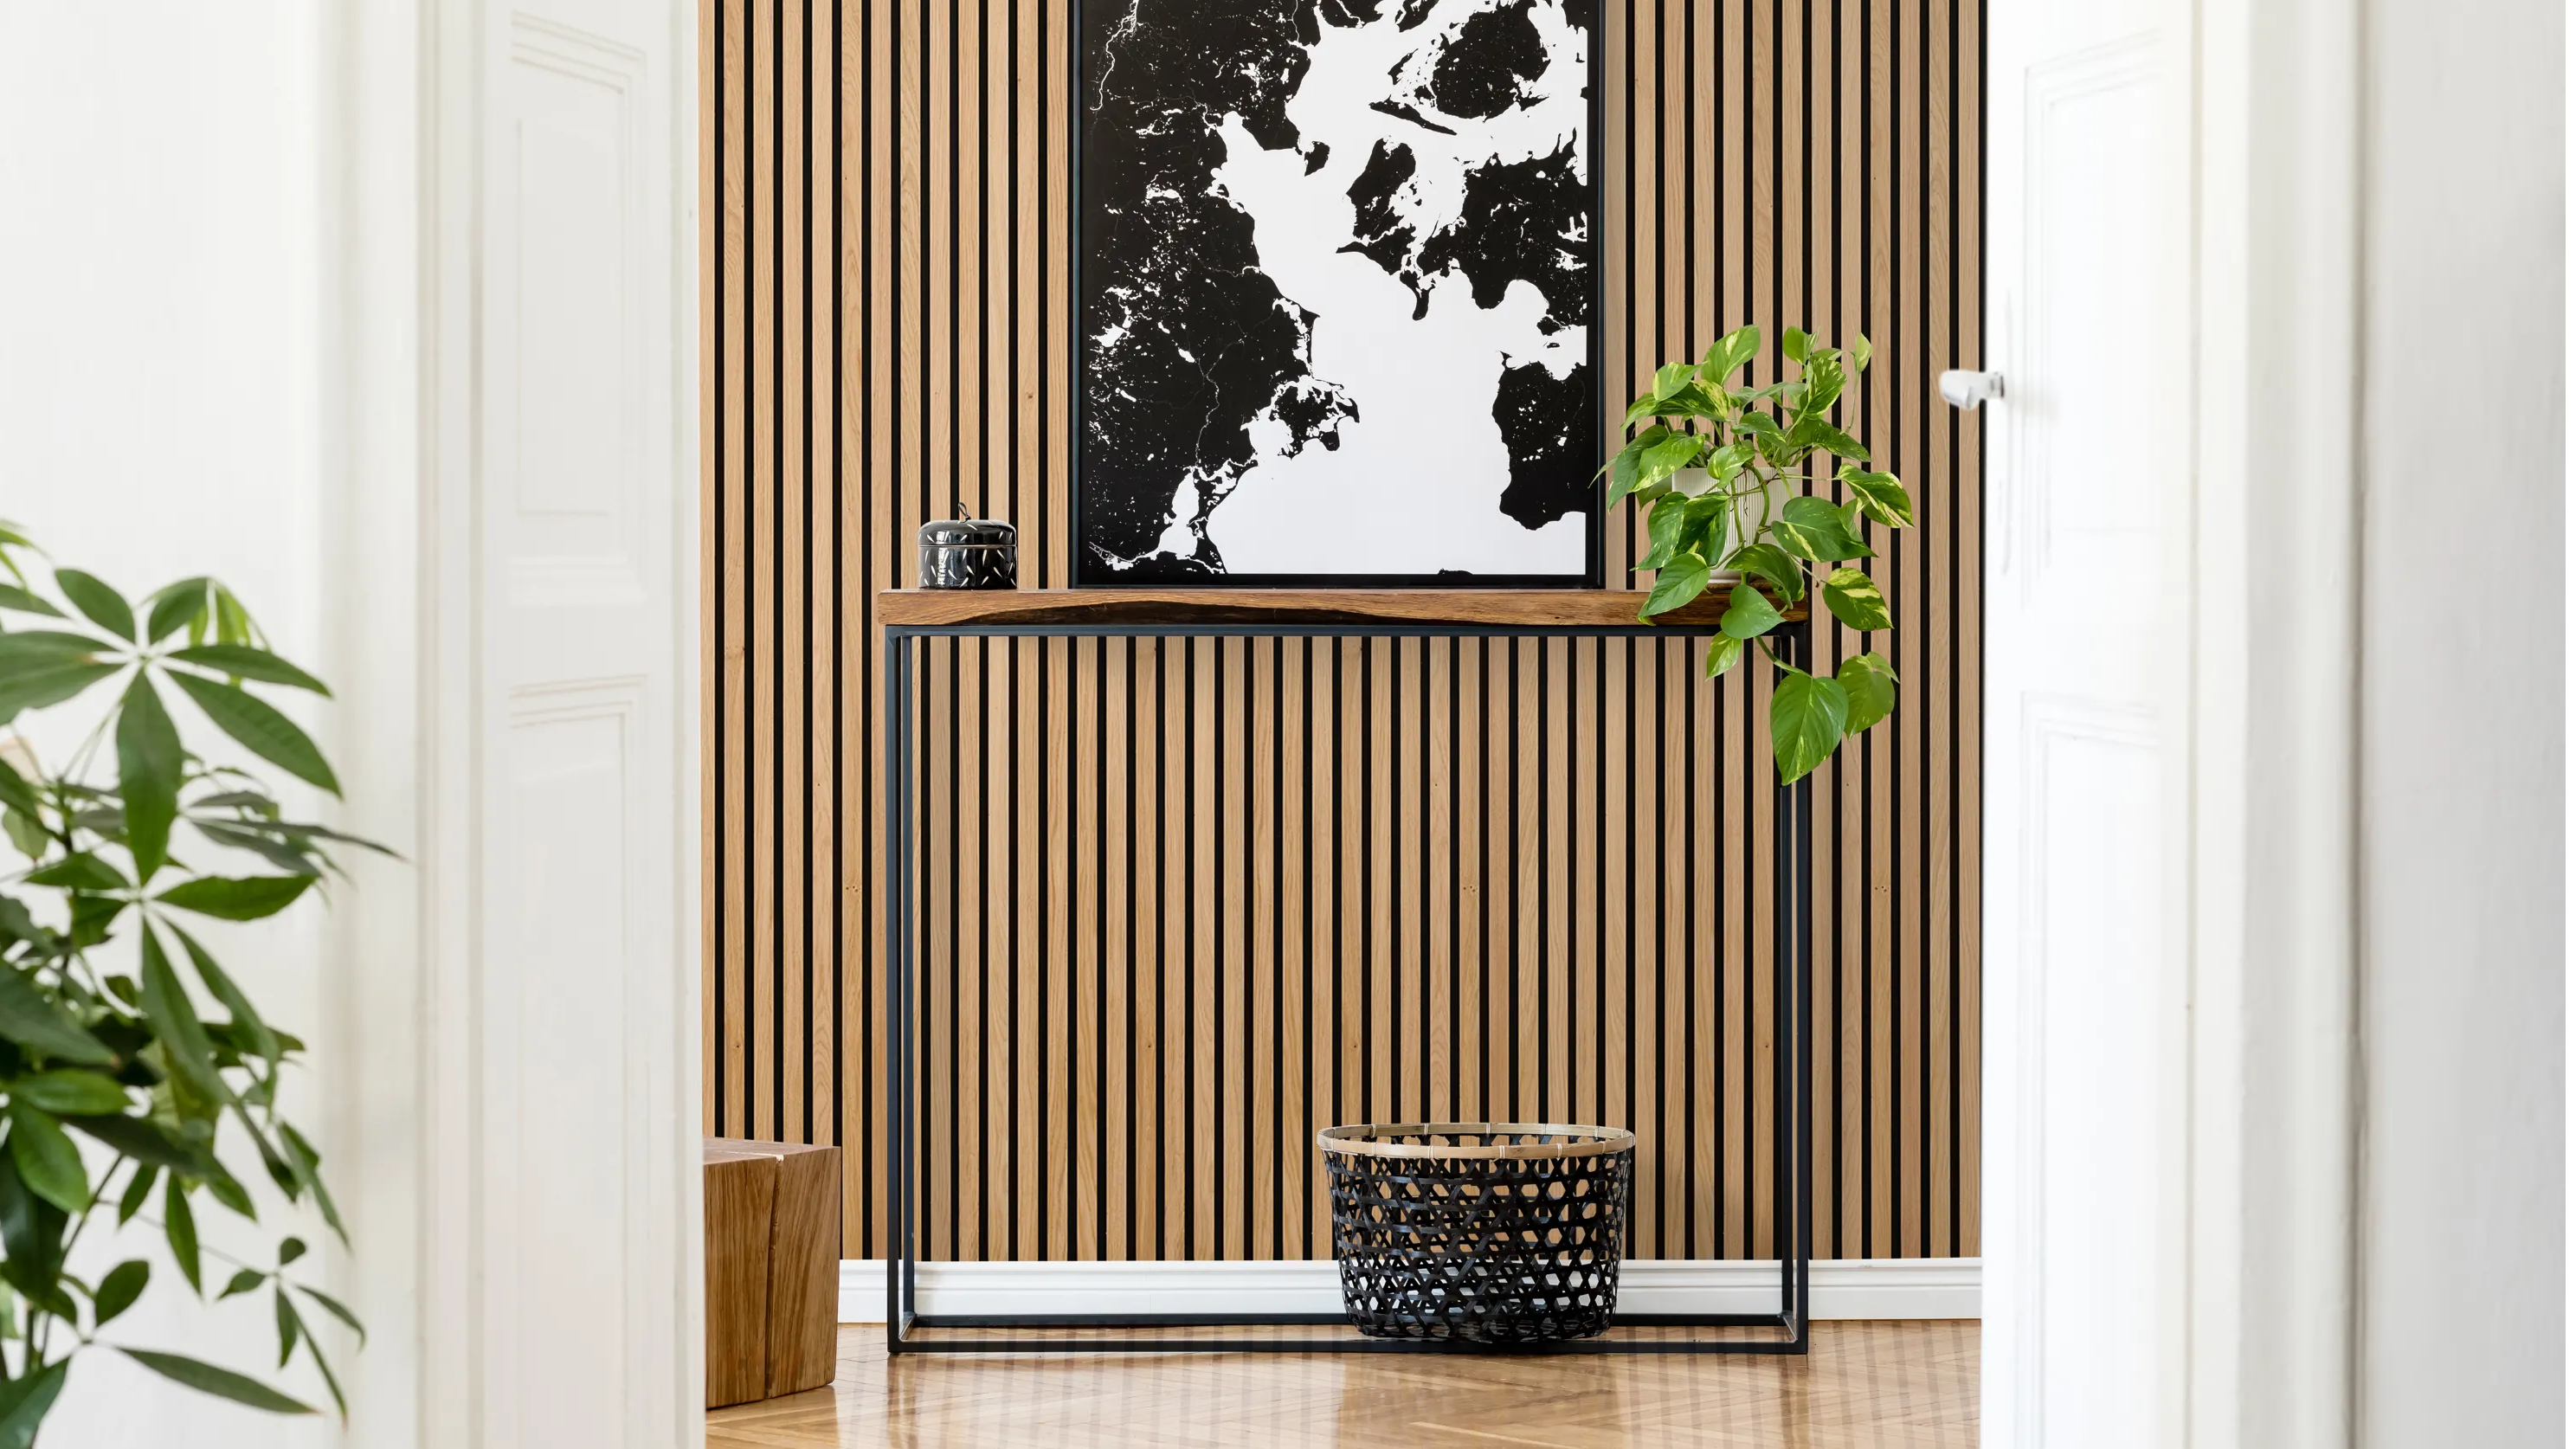 Oak acoustic slat wood wall paneling installed in a modern hallway.